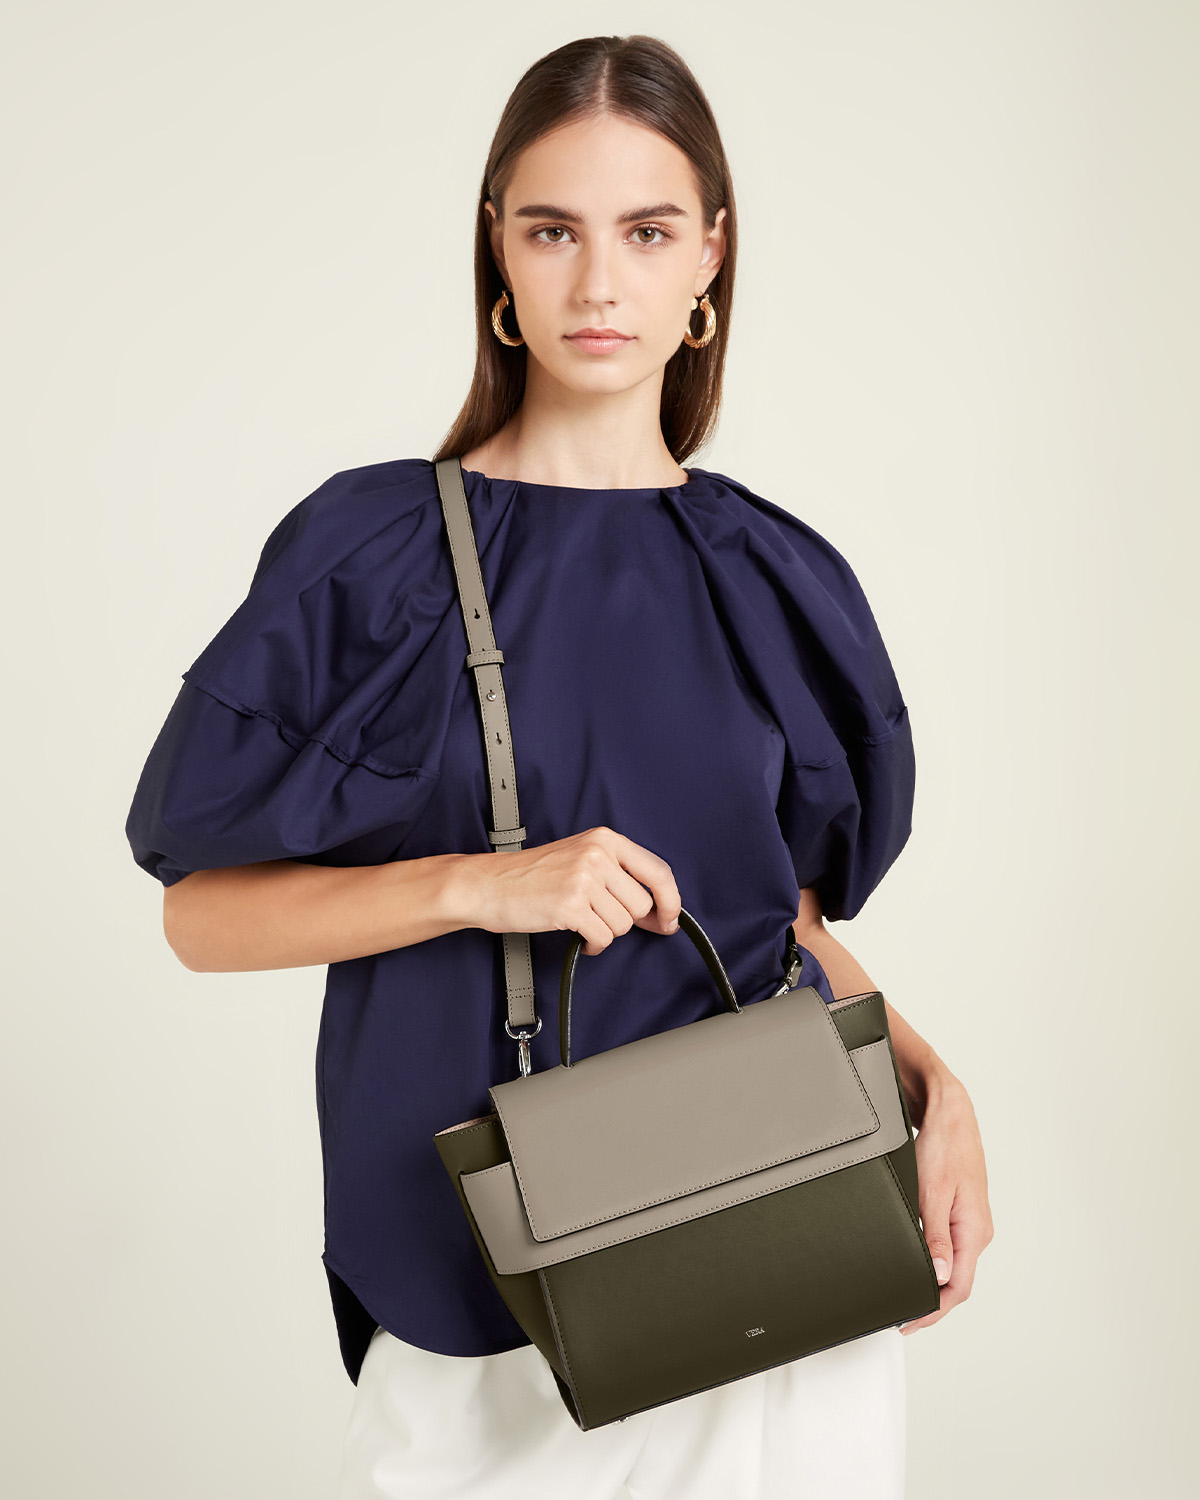 กระเป๋าถือหนังแท้ VERA Margo Leather Handbag, Size 24 สี Olive Green